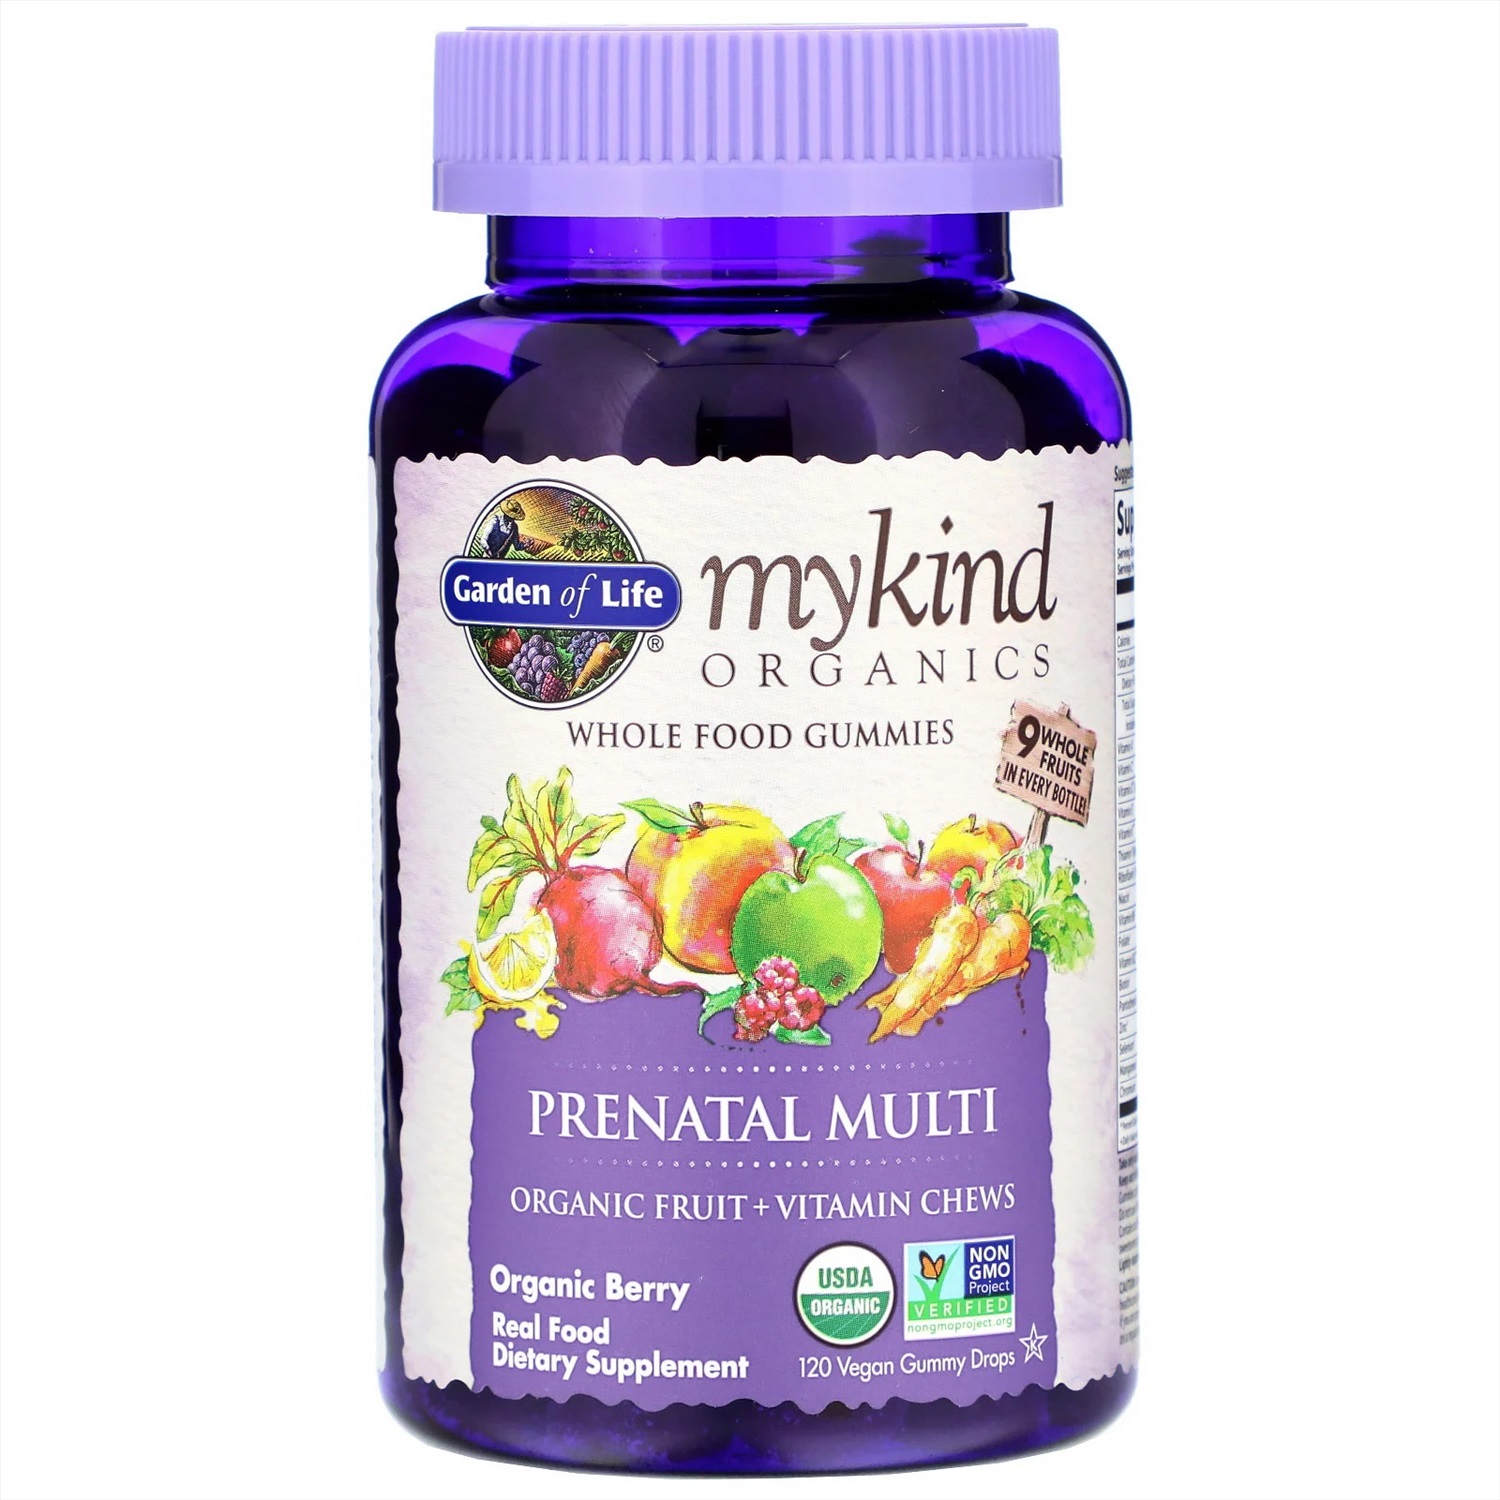 Витамины life отзывы. Garden of Life, mykind Organics, Prenatal Multi. Mykind Organics детский мультивитамин. Витамины Garden of Life Prenatal Multi.